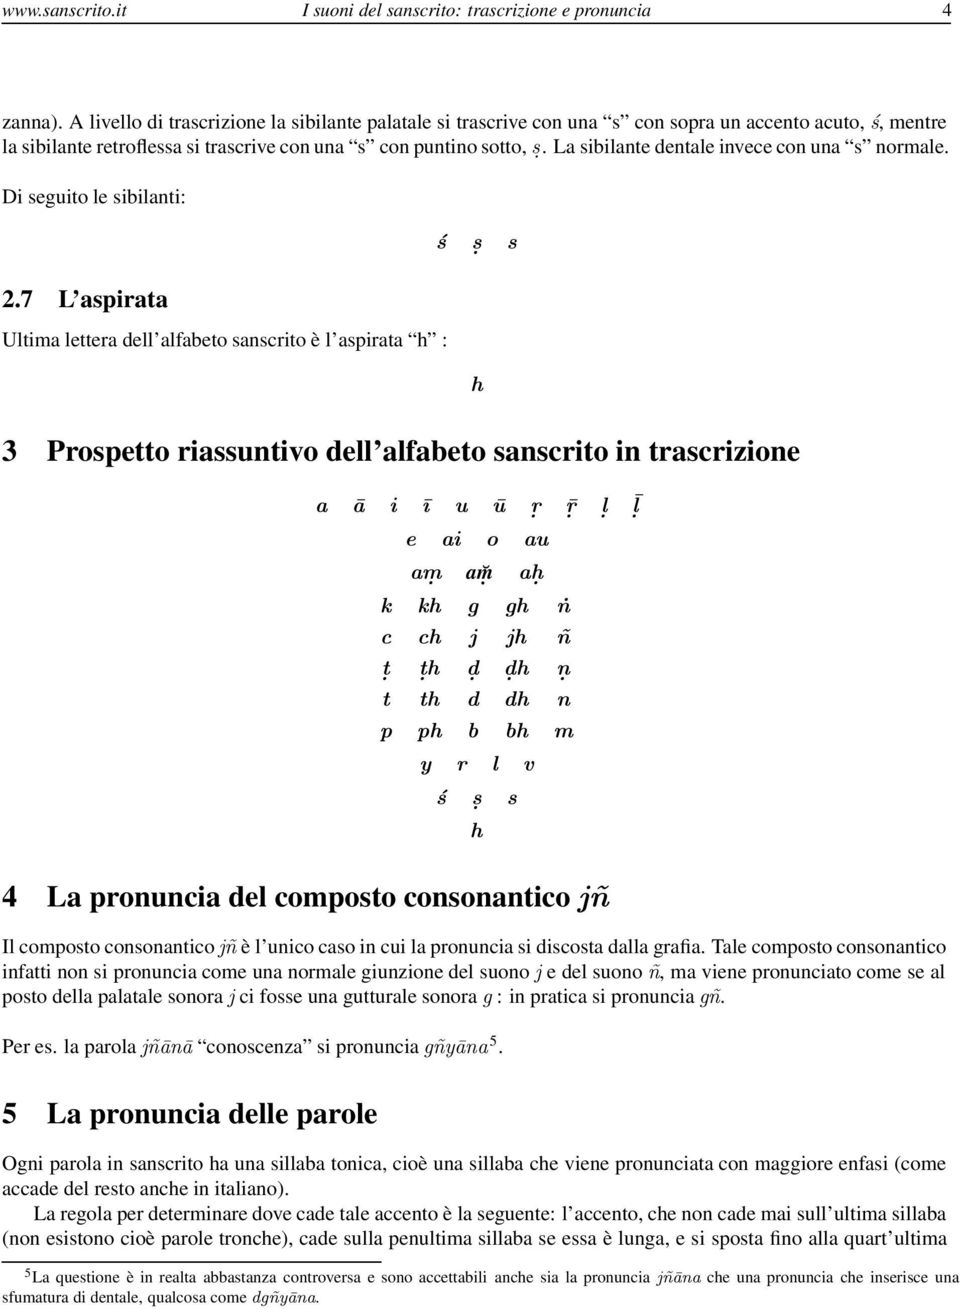 I Suoni Del Sanscrito Alfabeto In Trascrizione E Pronuncia Delle Parole Giulio Geymonat Website Pdf Download Gratuito